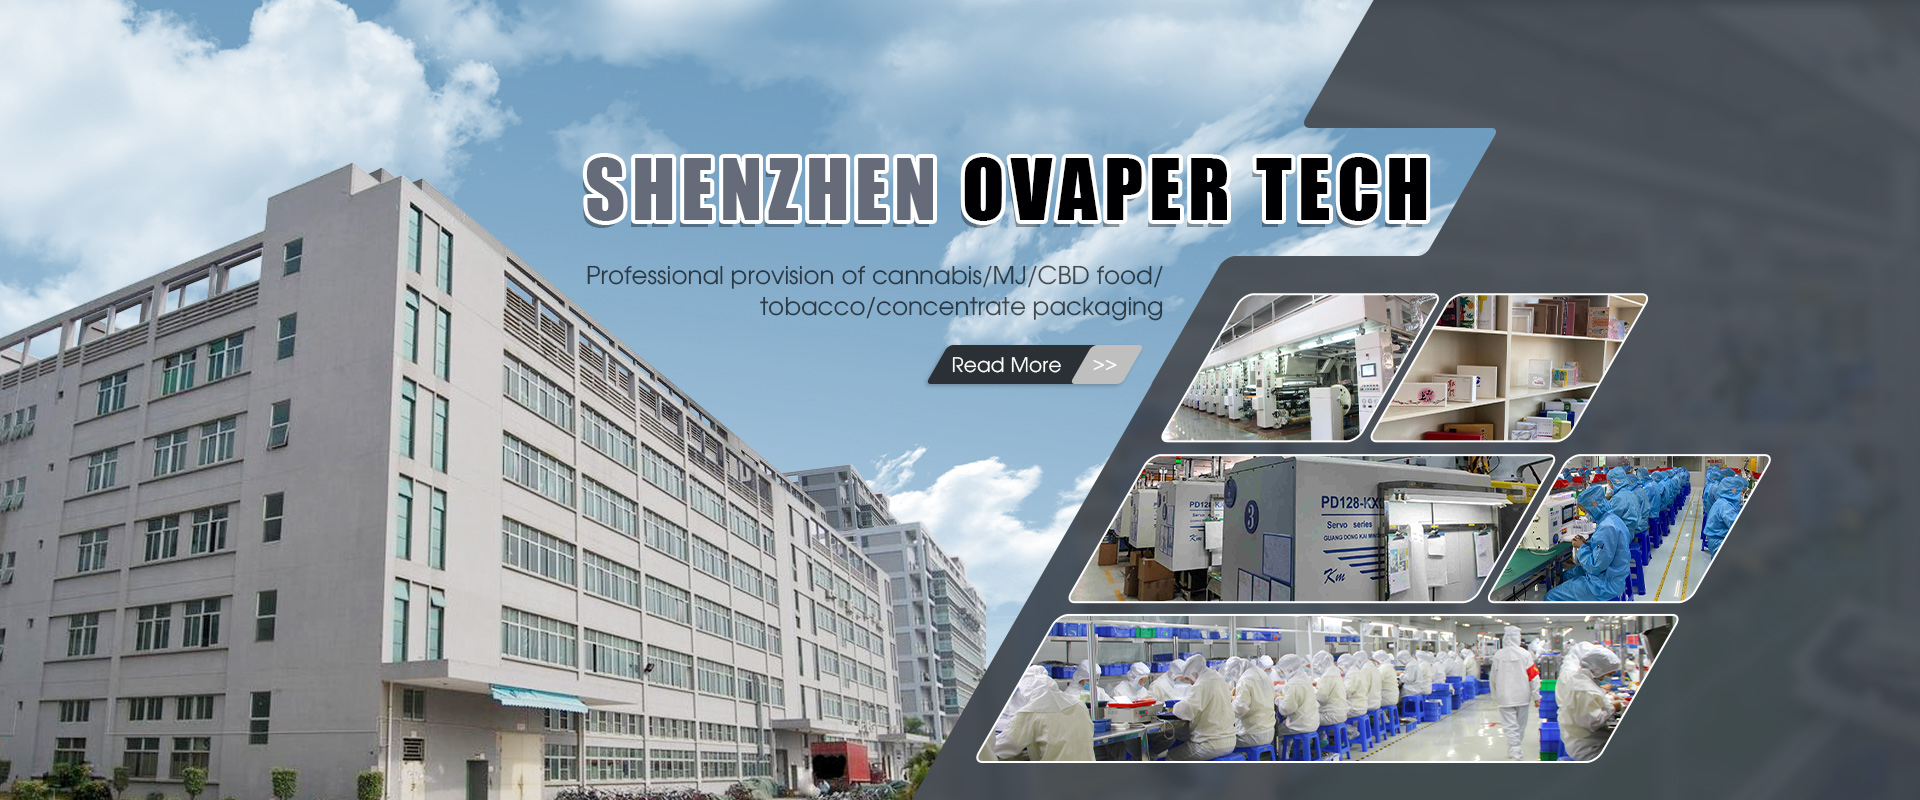 Az Ovaper Techről